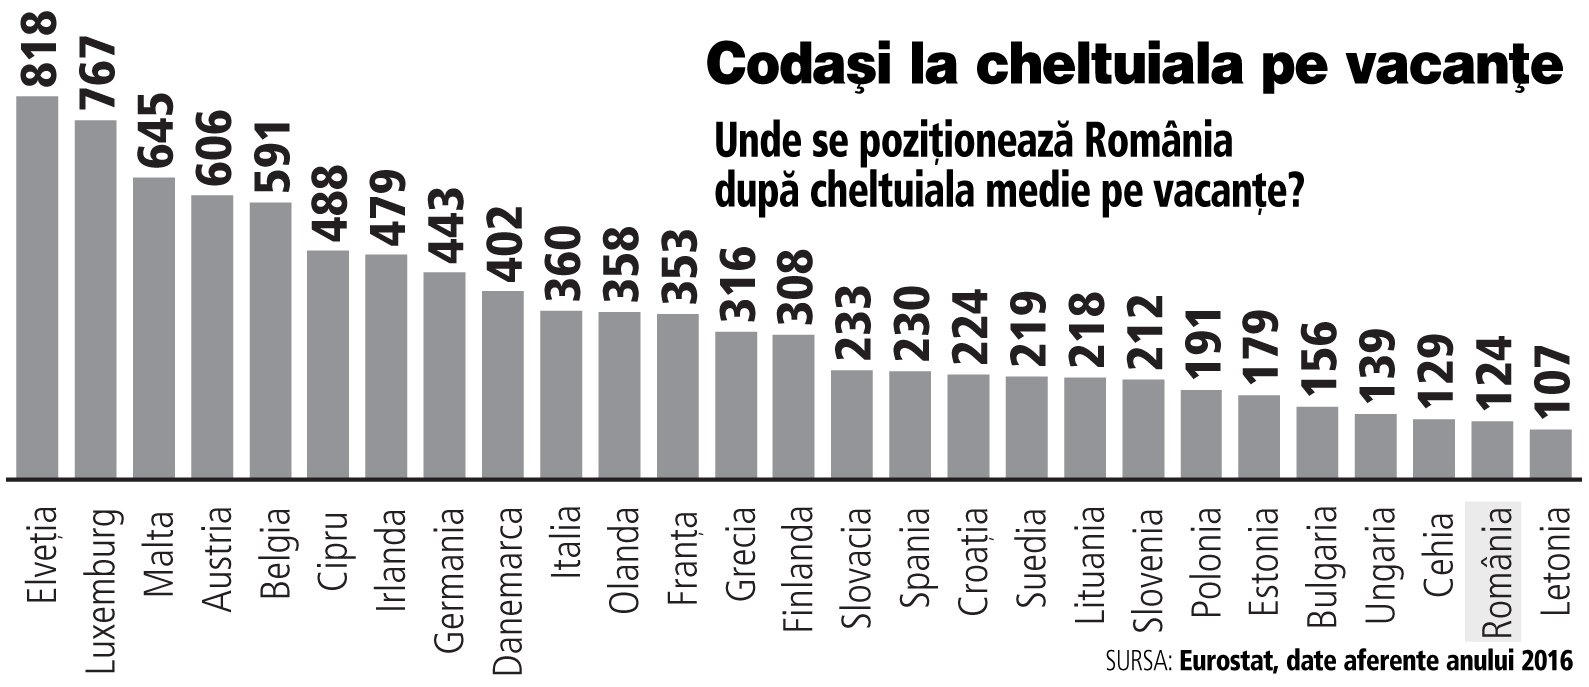 Un român cheltuie 124 de euro în medie pe o vacanţă, faţă de 353 de euro un francez sau 443 de euro un german